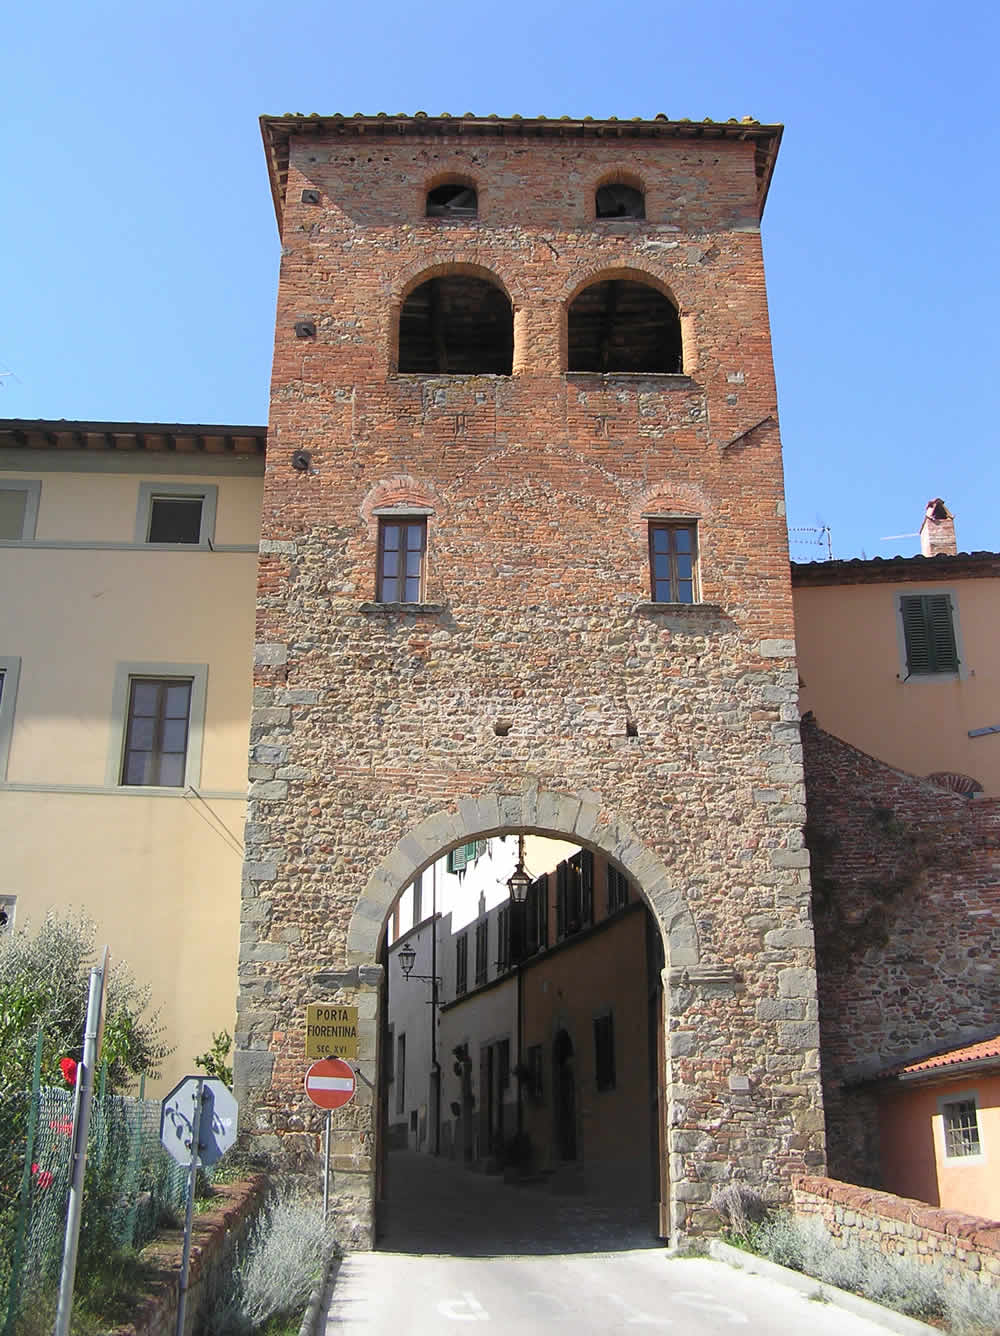 Porta Fiorentina, Montecarlo, Lucca. Author and Copyright Marco Ramerini